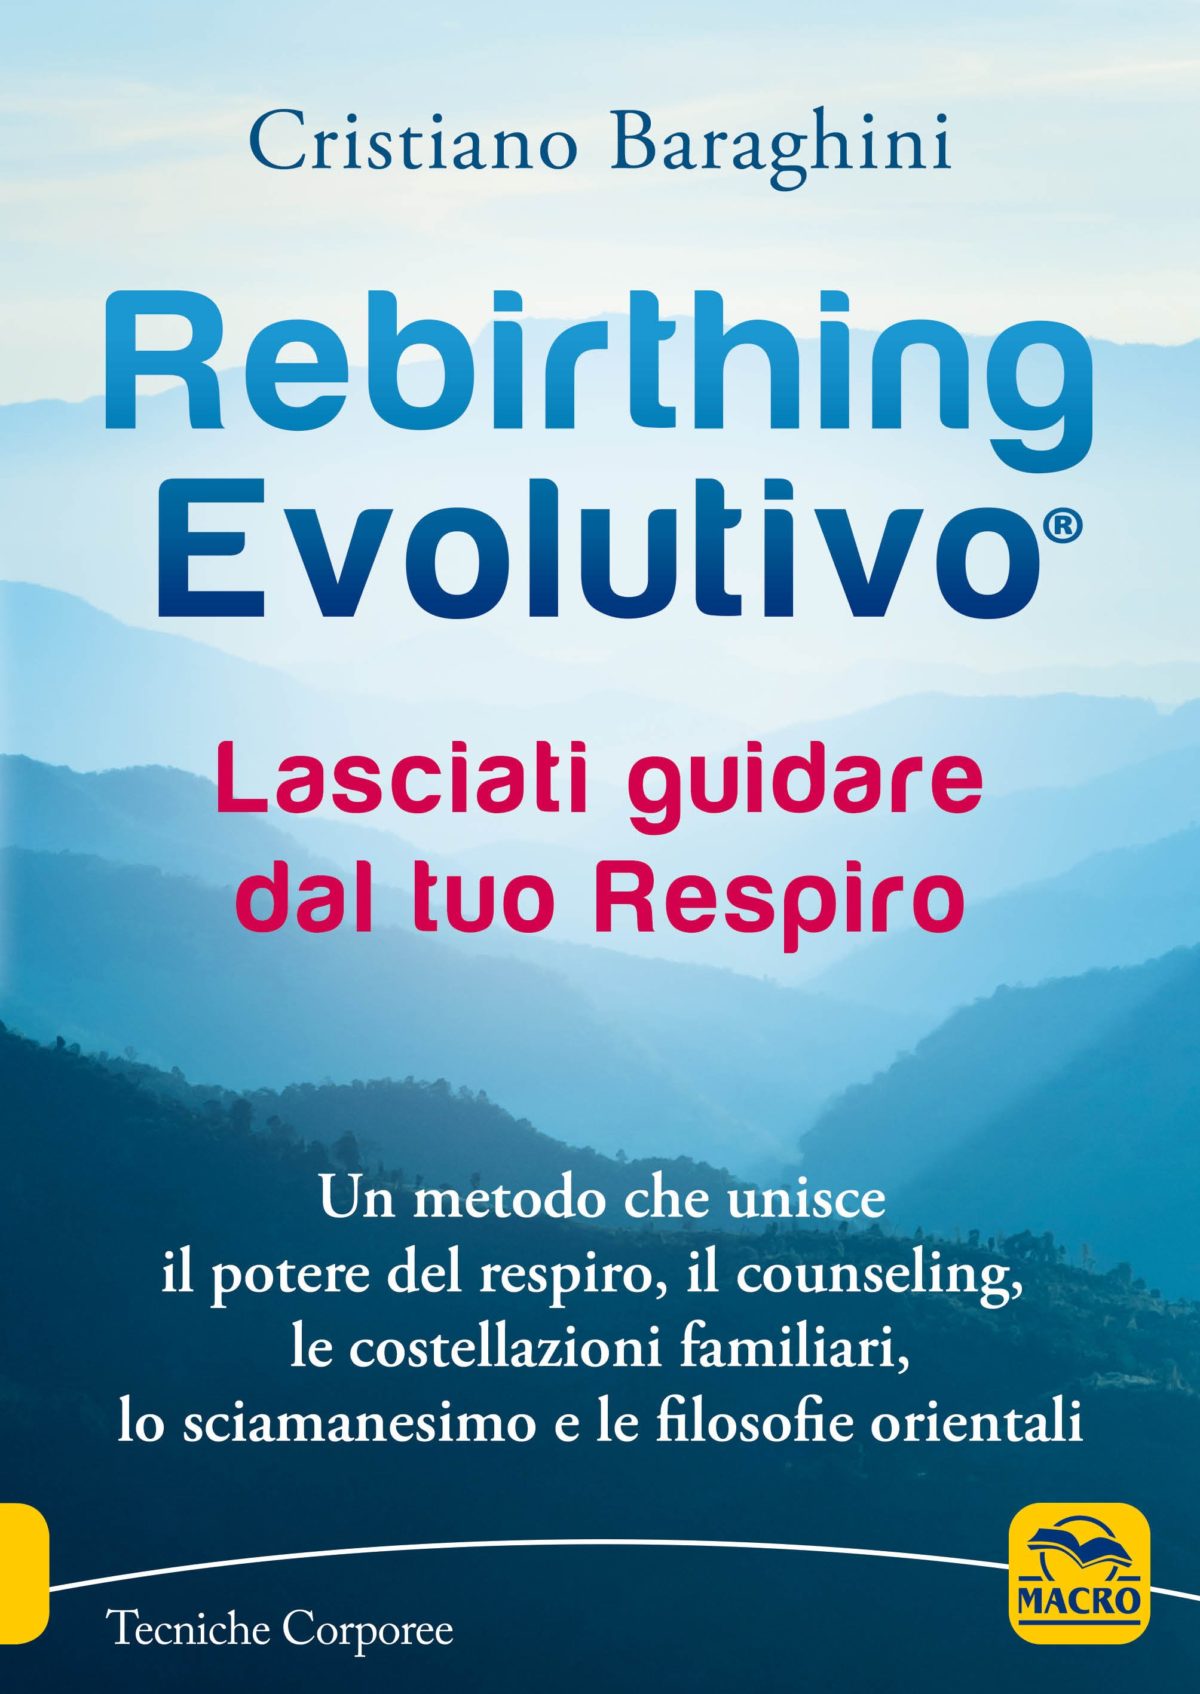 rebirthing-evolutivo-copertina